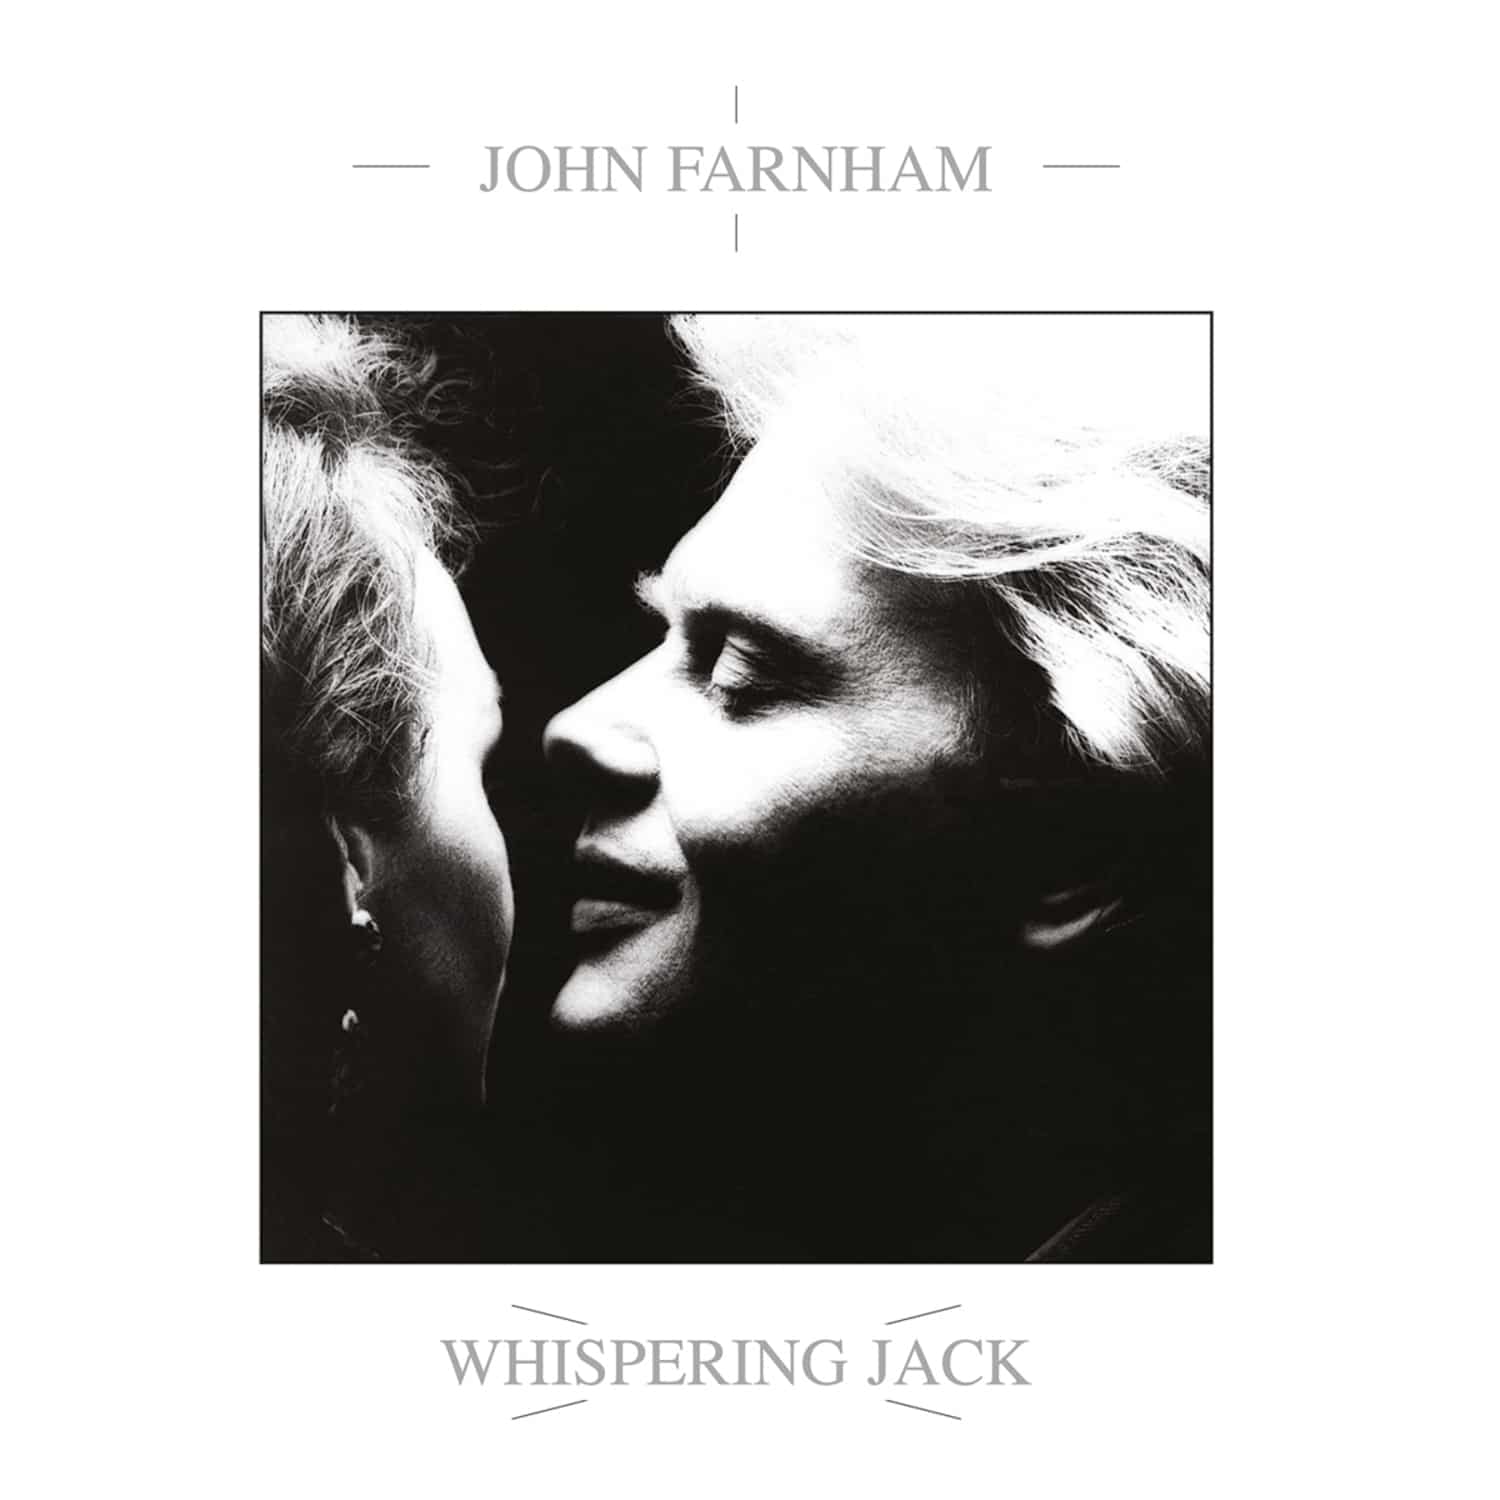 John Farnham - WHISPERING JACK 